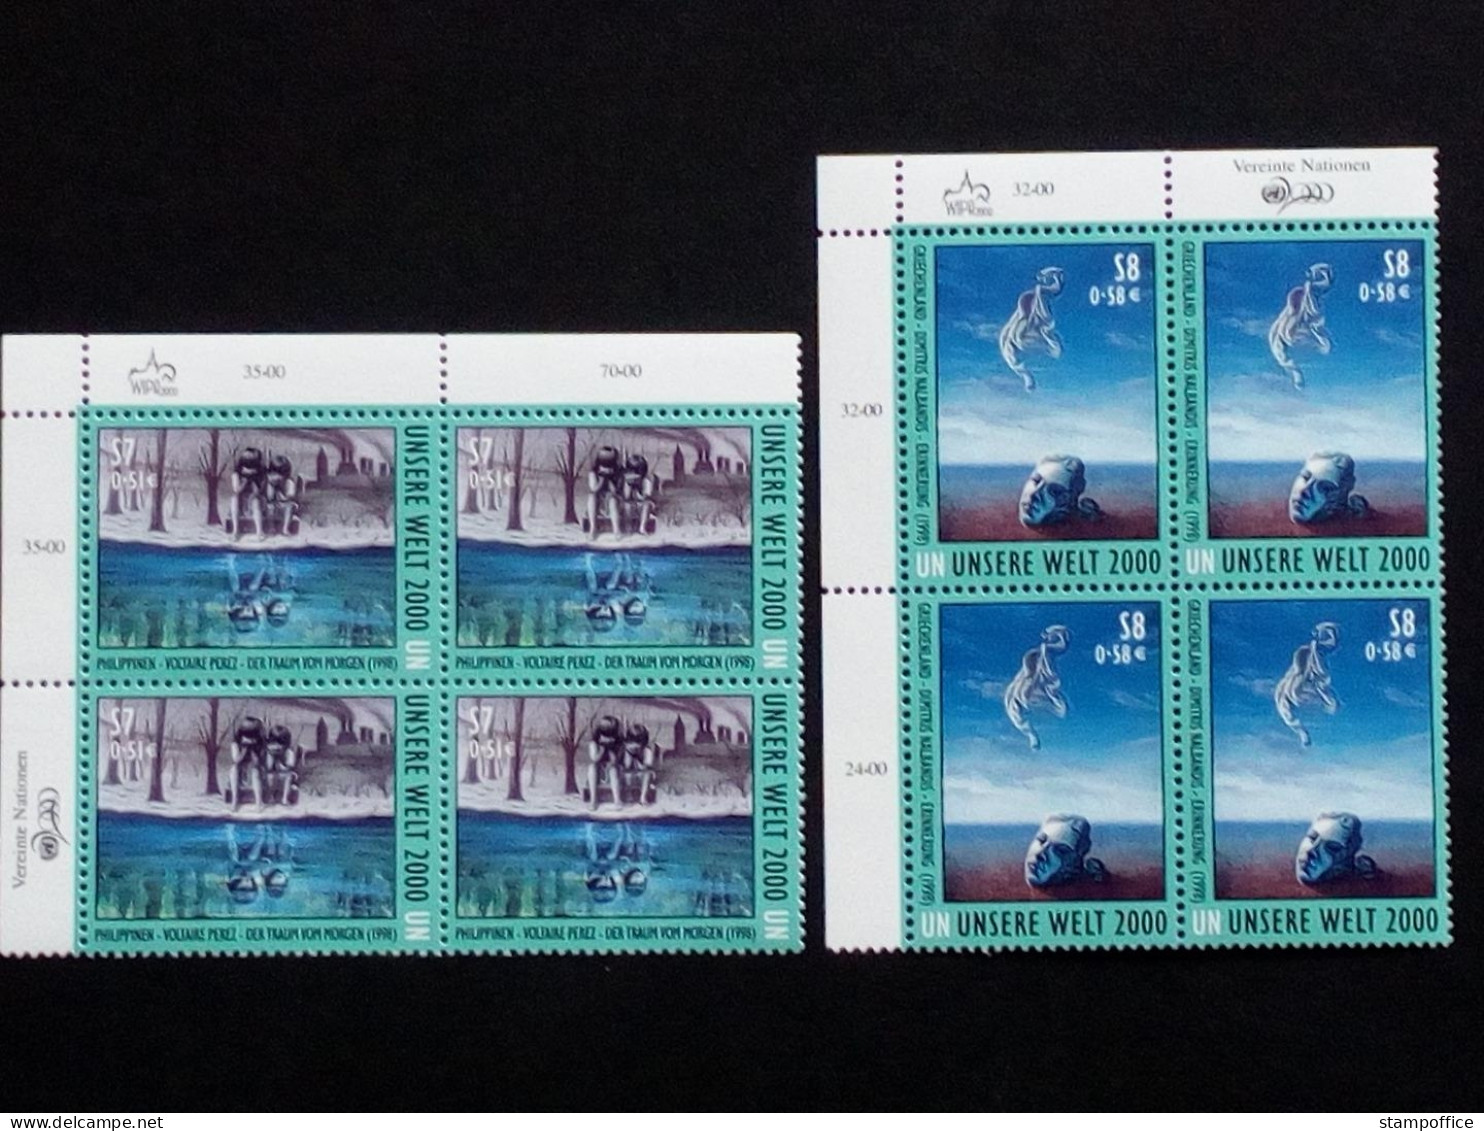 UNO WIEN 307-308 POSTFRISCH(MINT) 4er BLOCK GEMÄLDEAUSTELLUNG UNSERE WELT 2000 - Unused Stamps